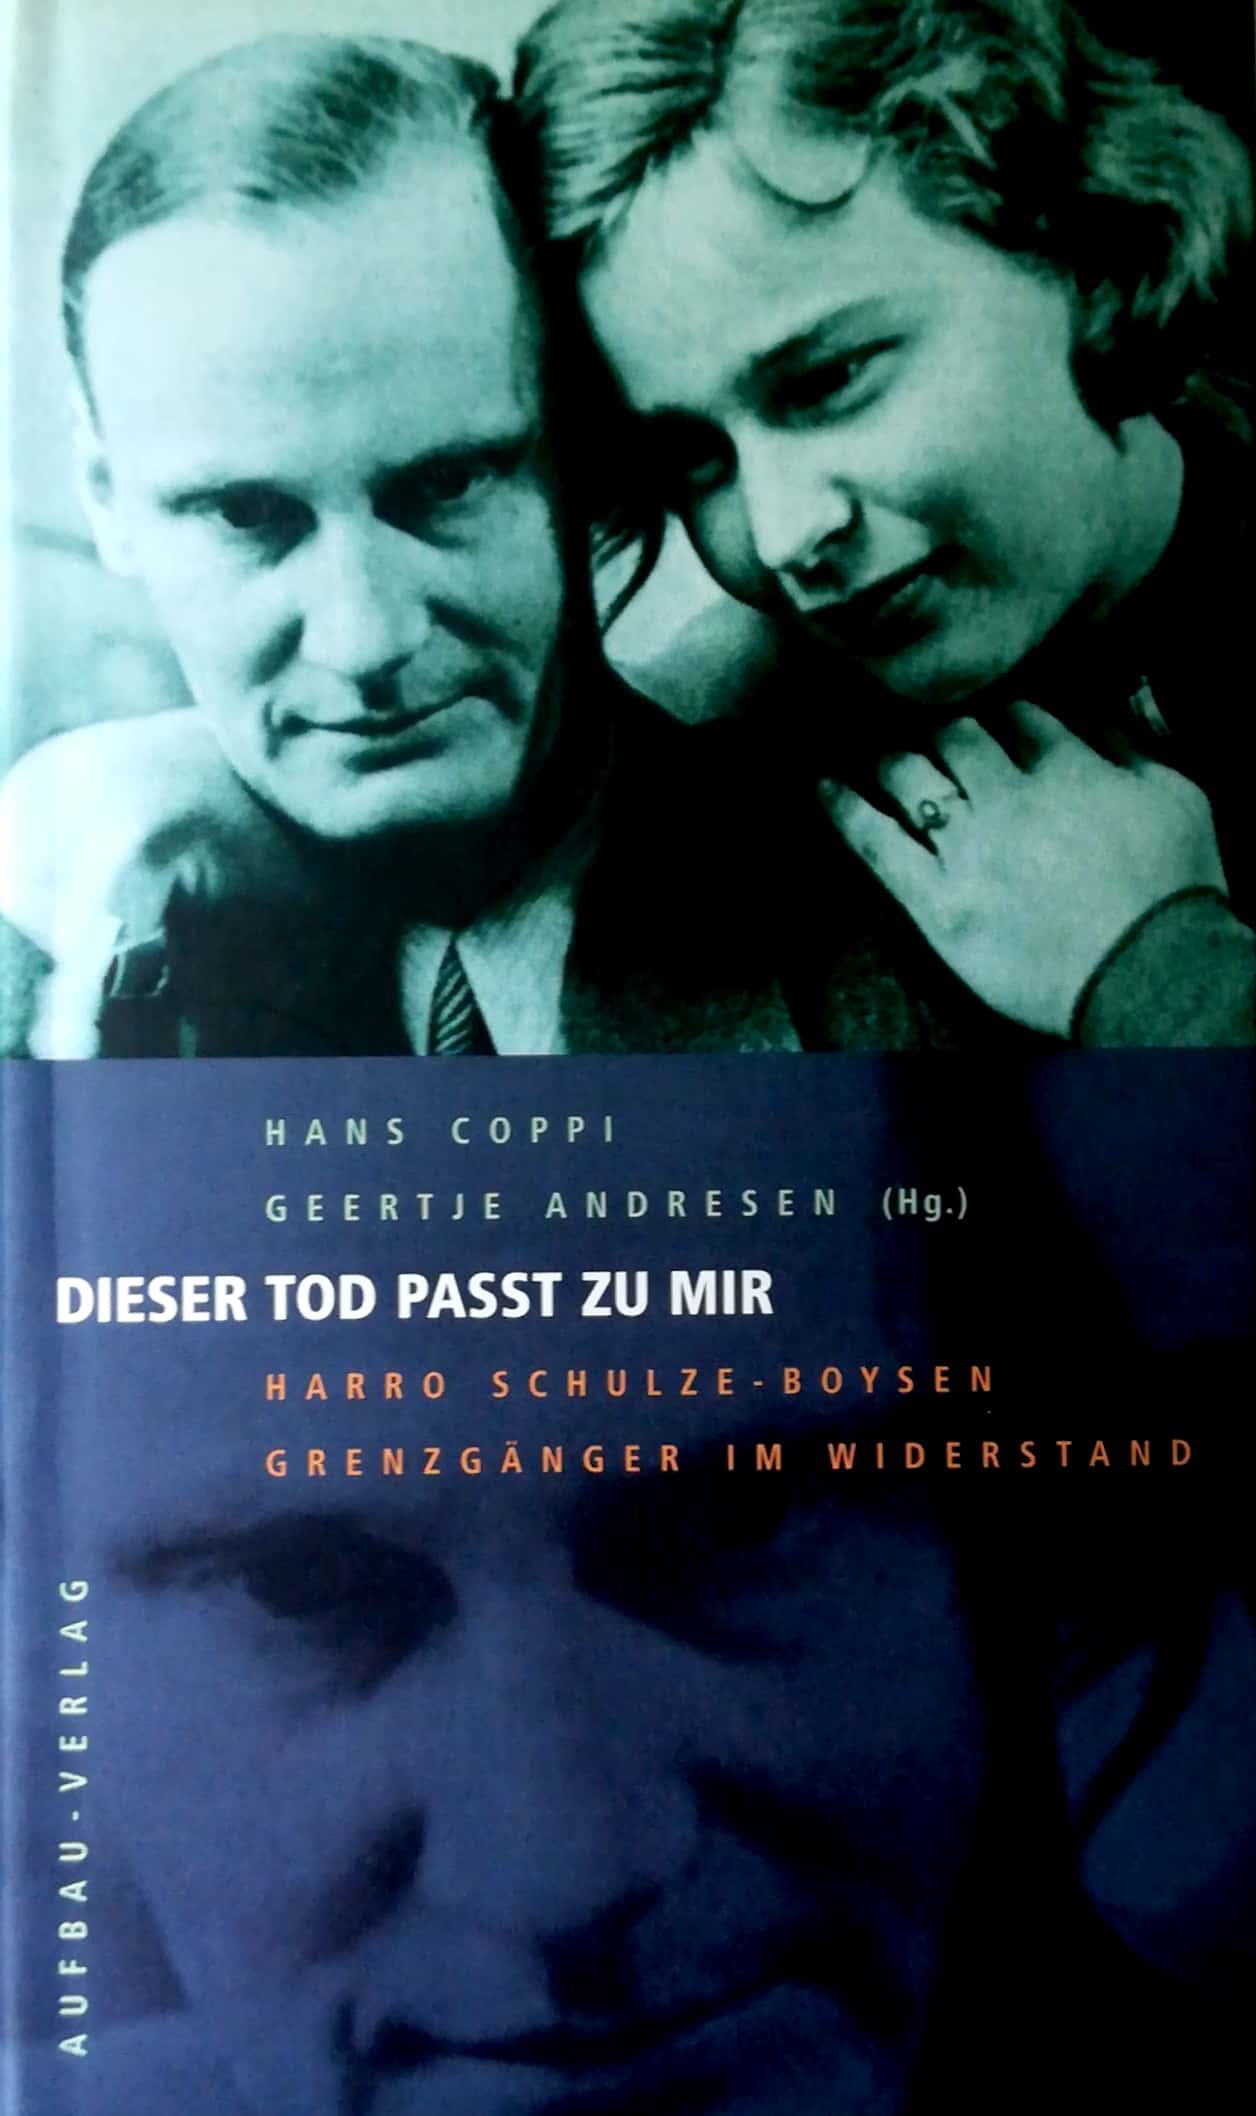 Dieser Tod paßt zu mir. Harro Schulze-Boysen - Grenzgänger im Widerstand. Briefe 1915 bis 1942. - Coppi, Hans / Geertje Andresen (Hrsg.)